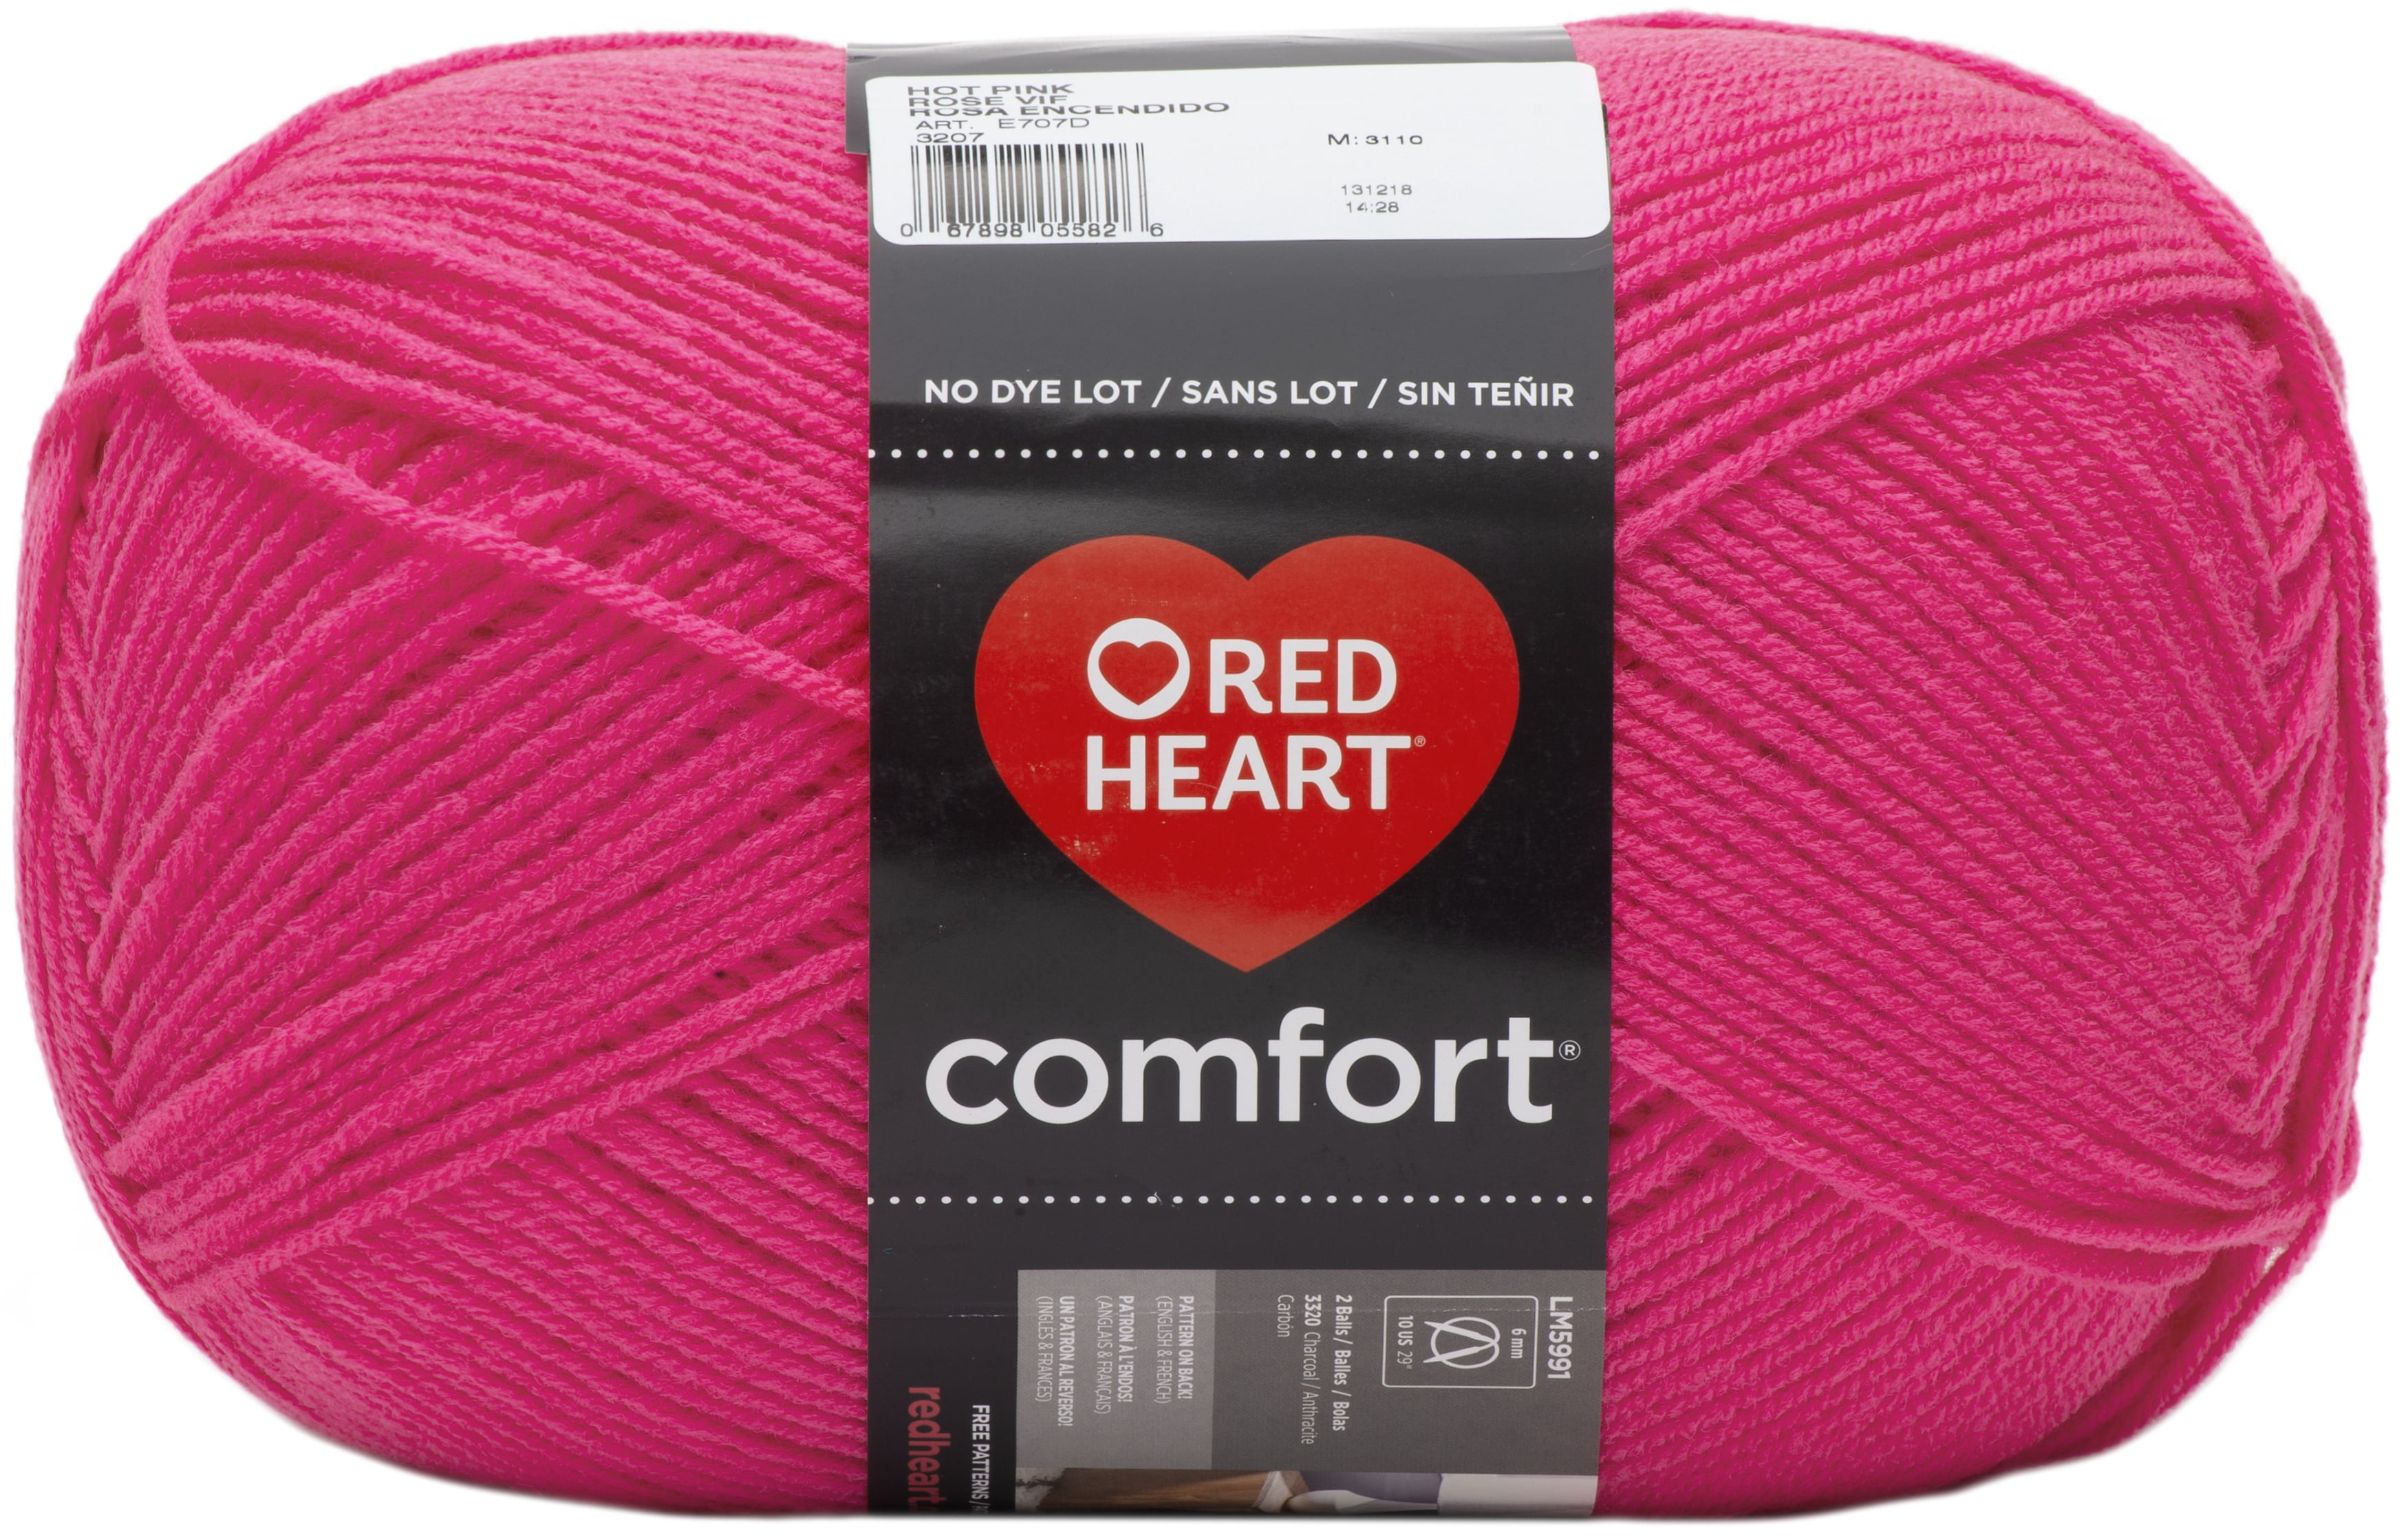 Red Heart® Super Saver Shocking Pink Yarn, 7 oz - Harris Teeter